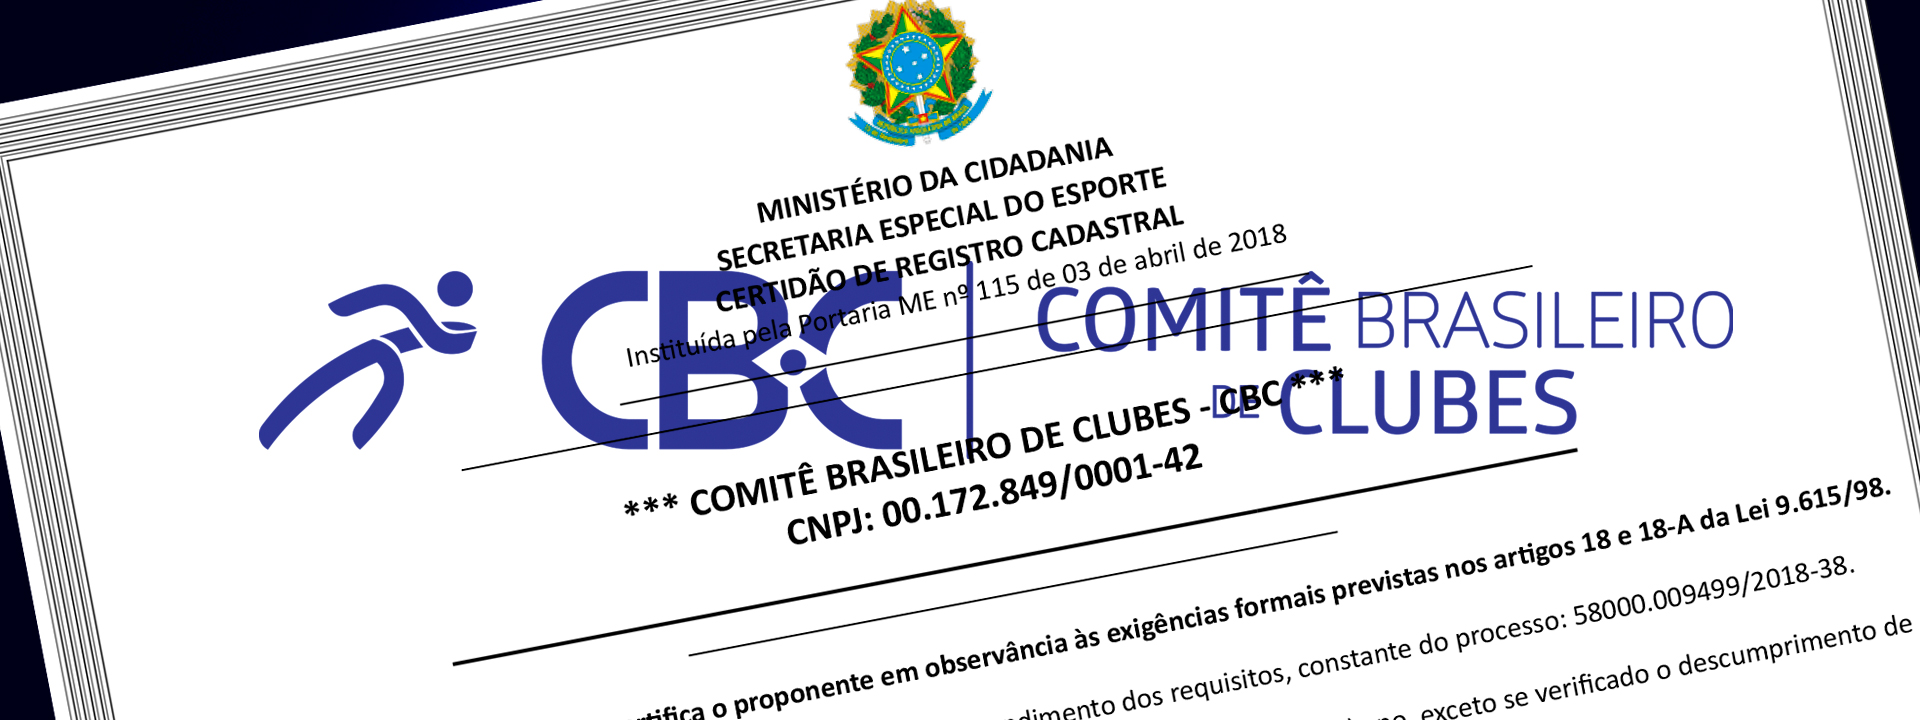 Comitê Brasileiro de Clubes - CBC recebe renovação de sua Certidão de Registro Cadastral, da Secretaria Especial do Esporte - SEE 